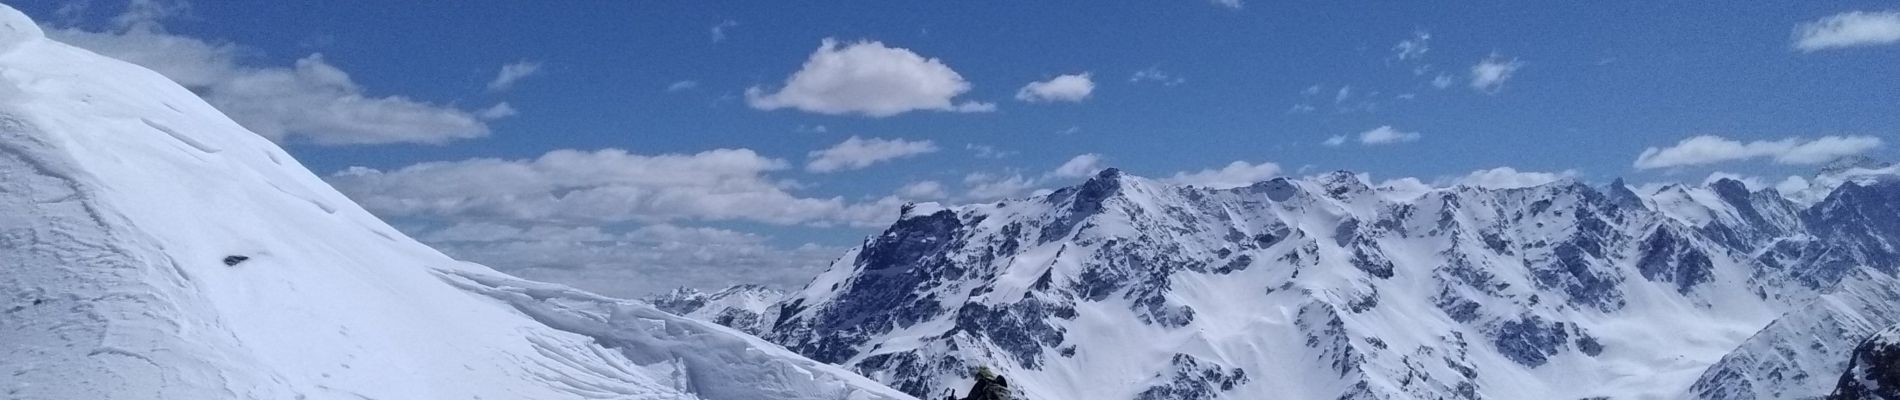 Tour Skiwanderen Valloire - Roche Olvera, pointe de la Mandette et col du Galibier - Photo